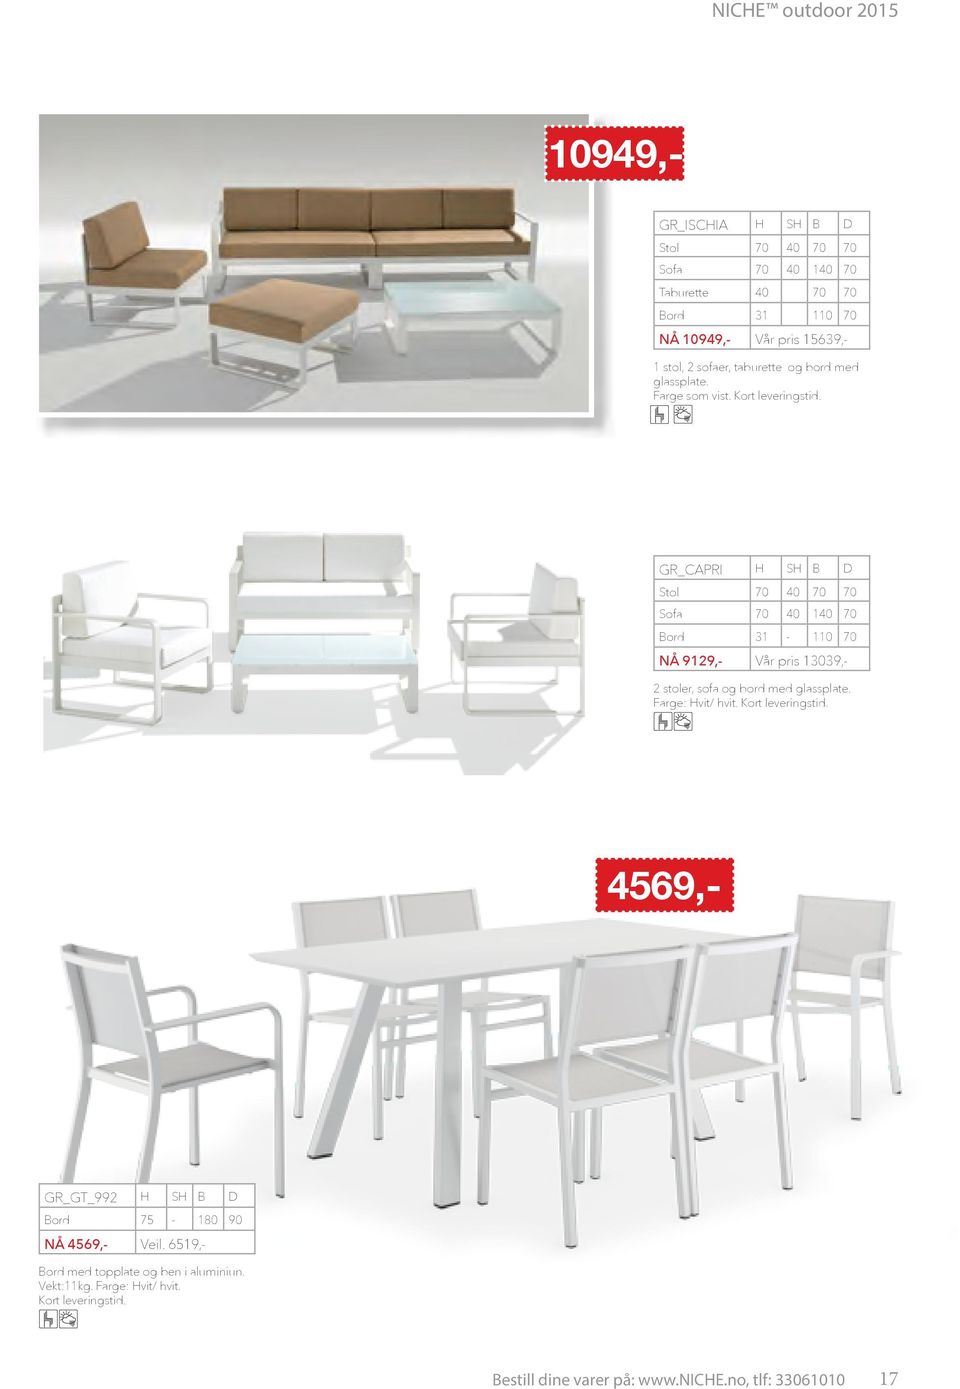 R_CAPRI S B Stol 70 40 70 70 Sofa 70 40 140 70 Bord 31-110 70 NÅ 9129,- Vår pris 13039,- 2 stoler, sofa og bord med glassplate.